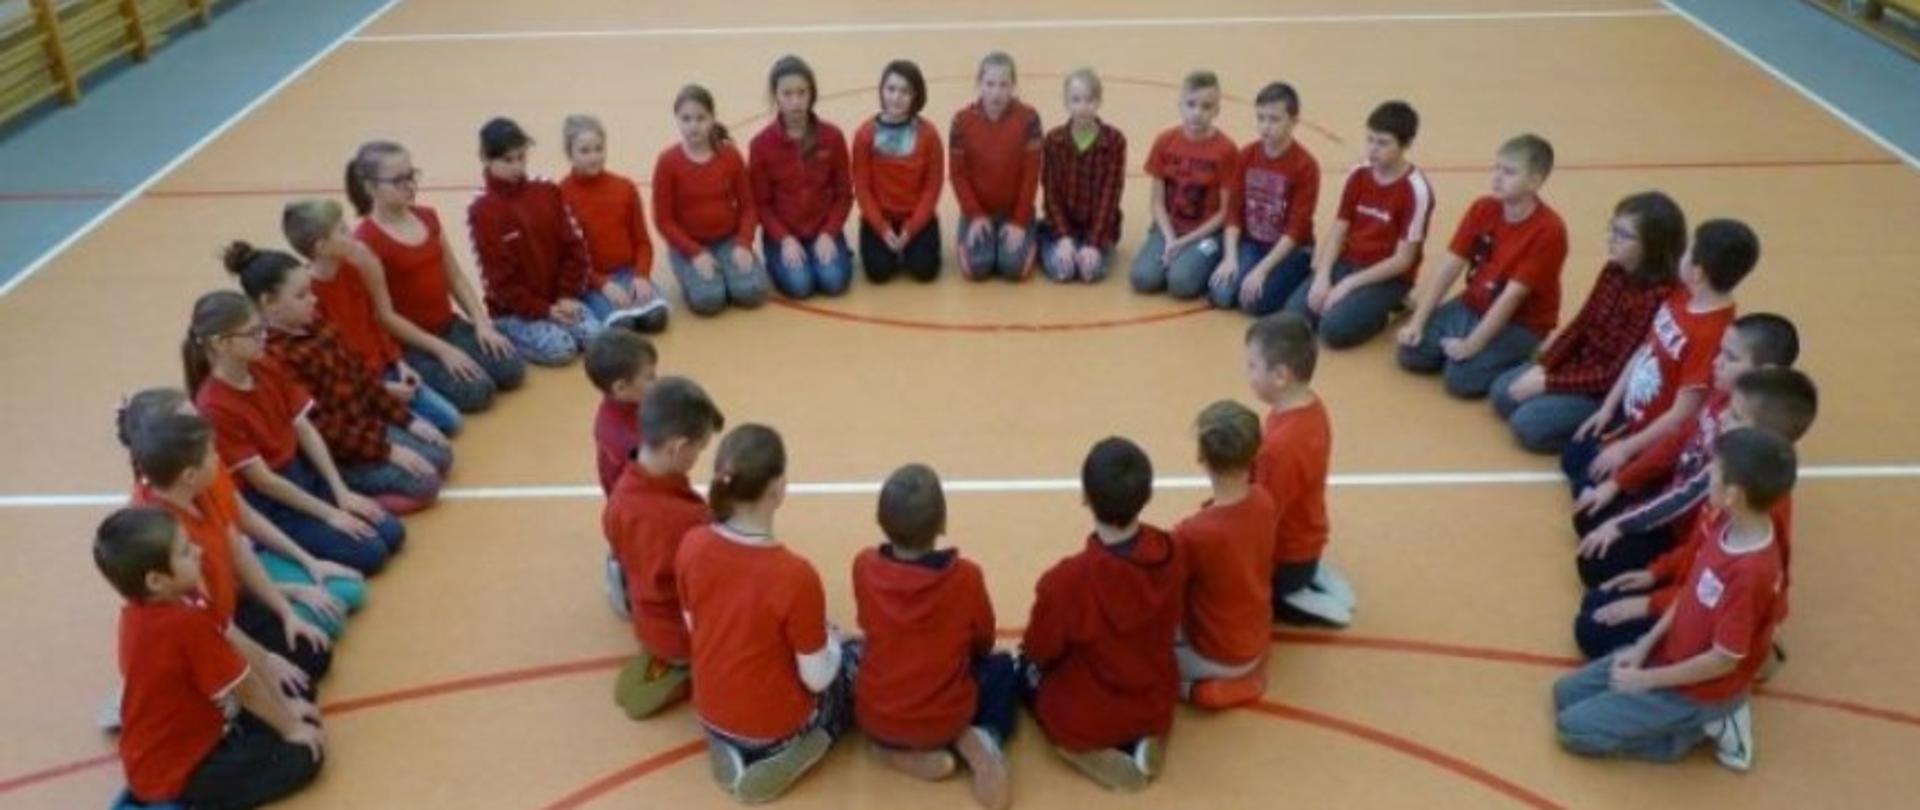 Dzieci w czerwonych koszulkach siedzące w kształcie logo polskiej pomocy w sali gimnastycznej